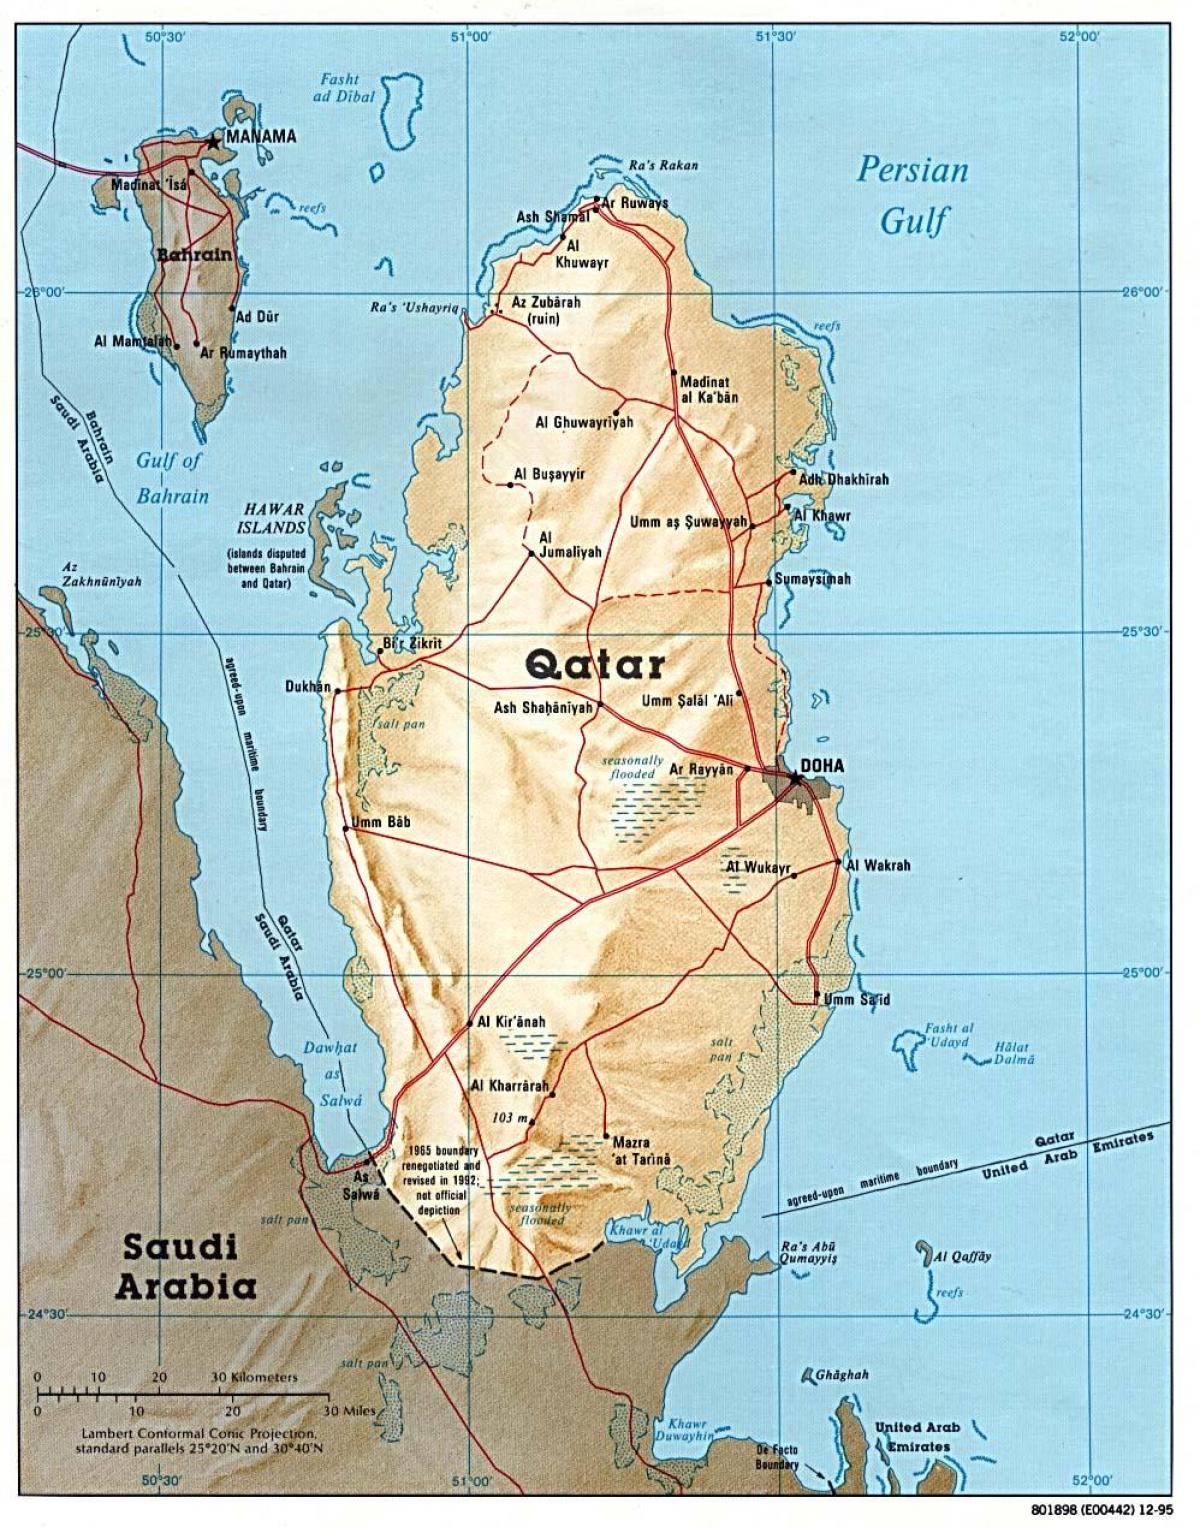 Катар пълна картата